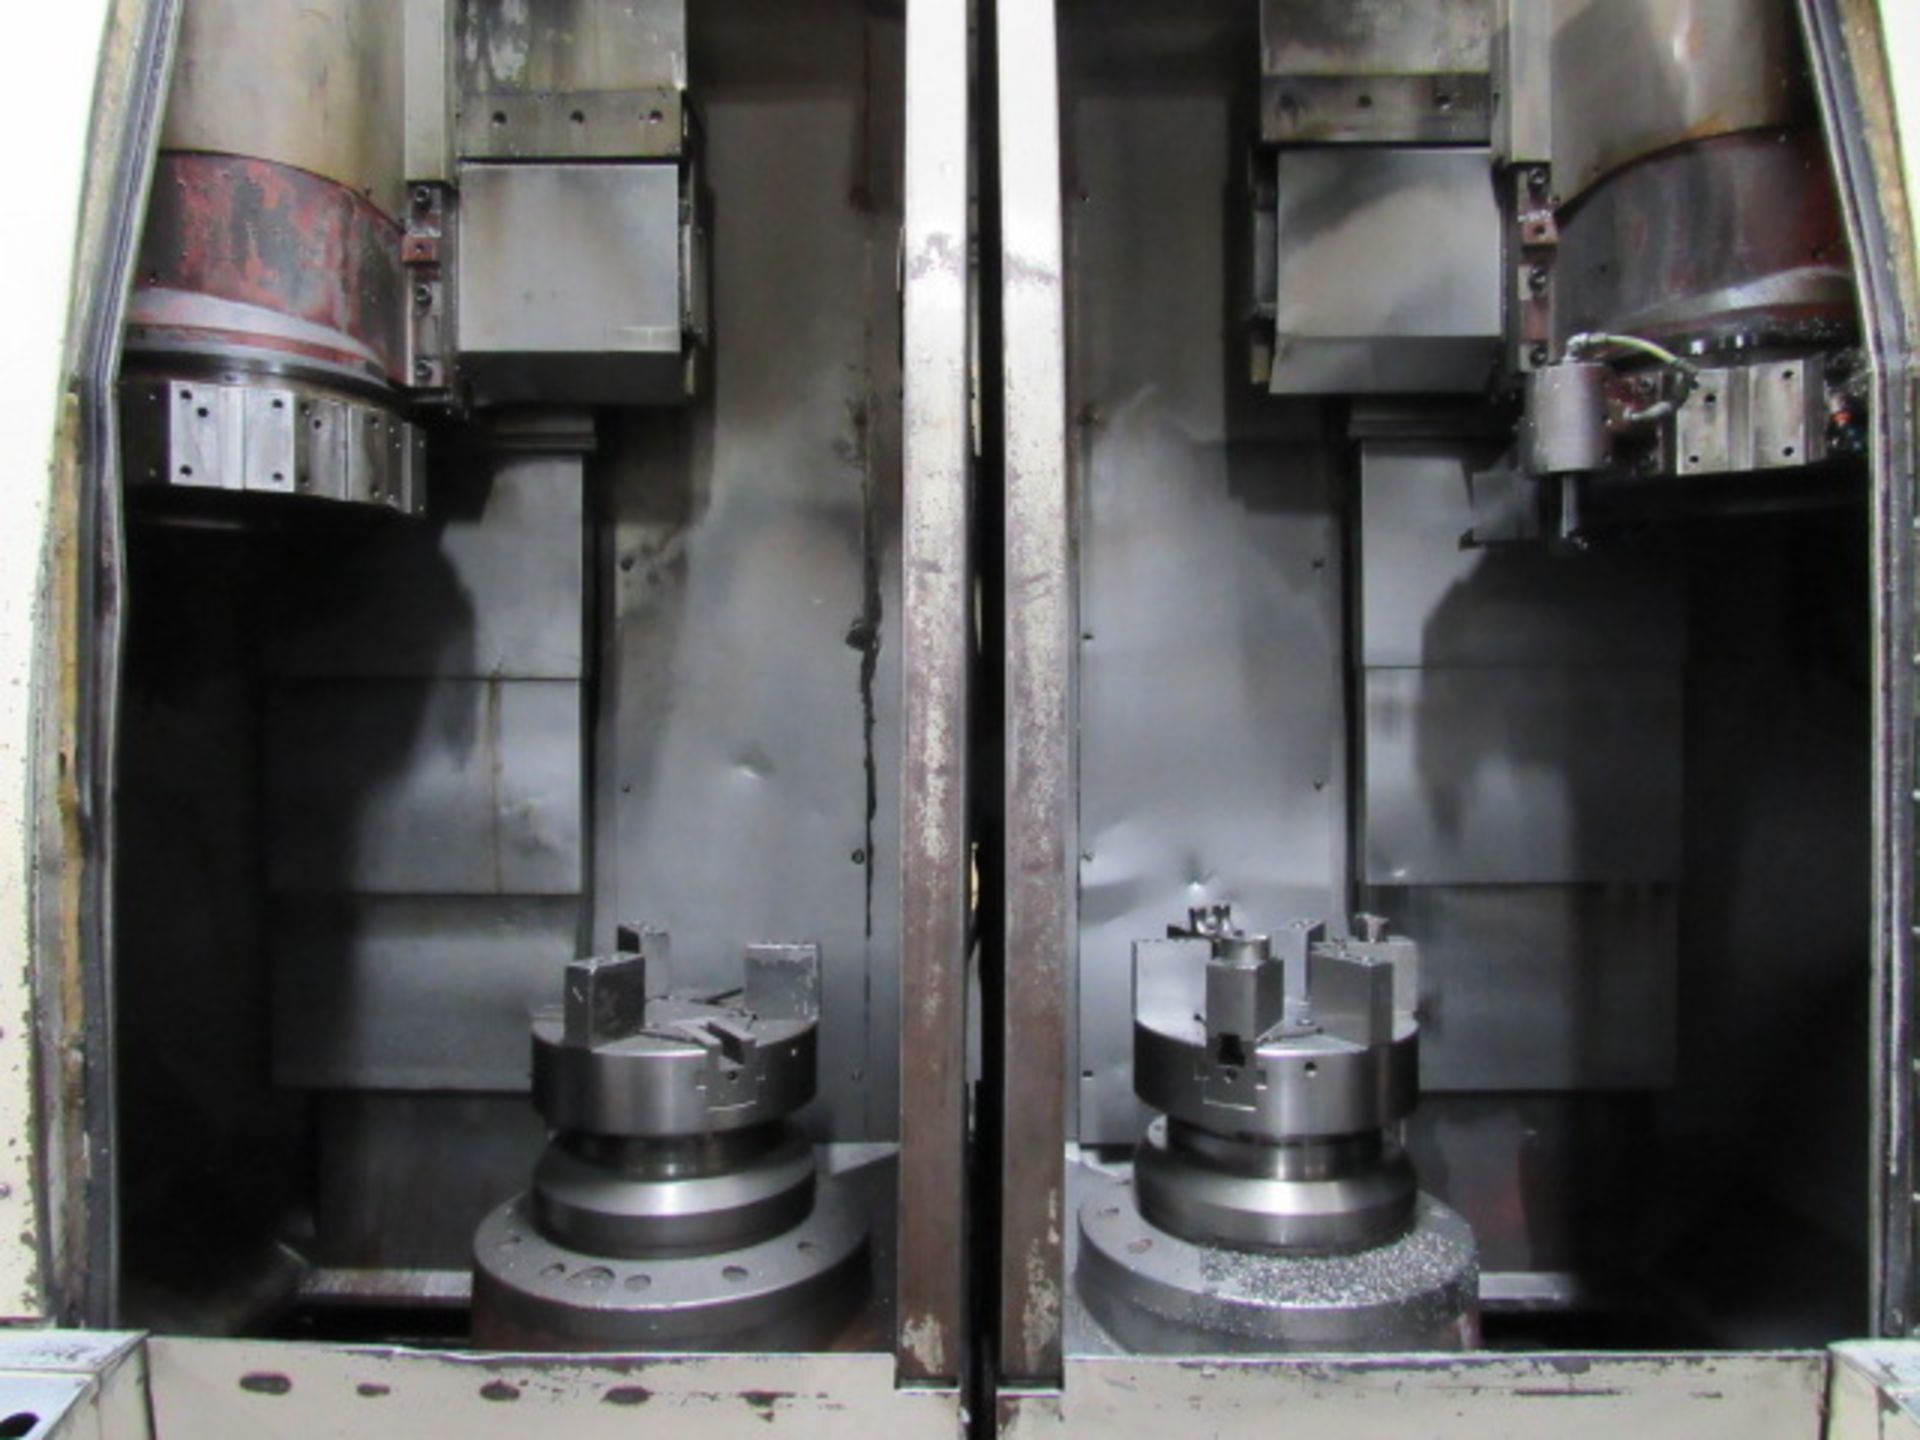 Okuma & Howa 2SP-V55 Vertical Dual Spindle CNC Lathe - Image 8 of 12